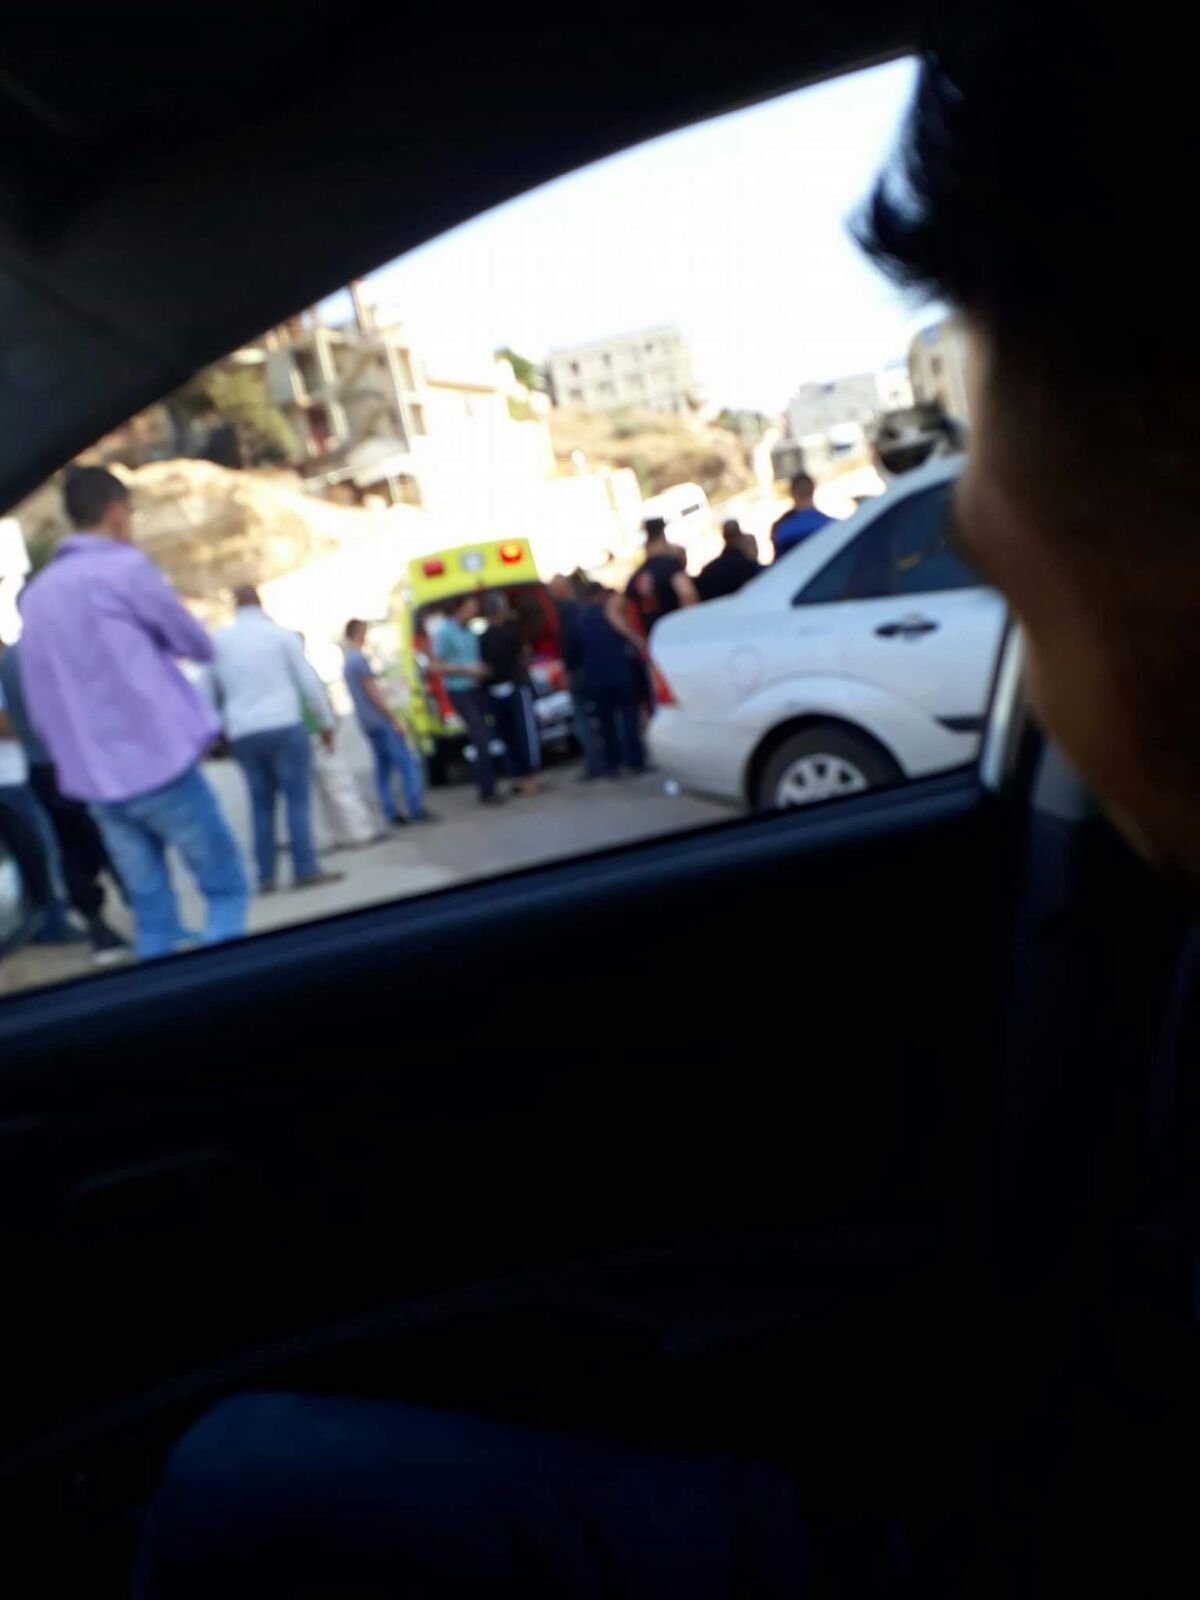 ام الفحم: مصرع رزق عبدالقادر اغبارية بعد تعرضه للدهس من قبل شاحنة-8